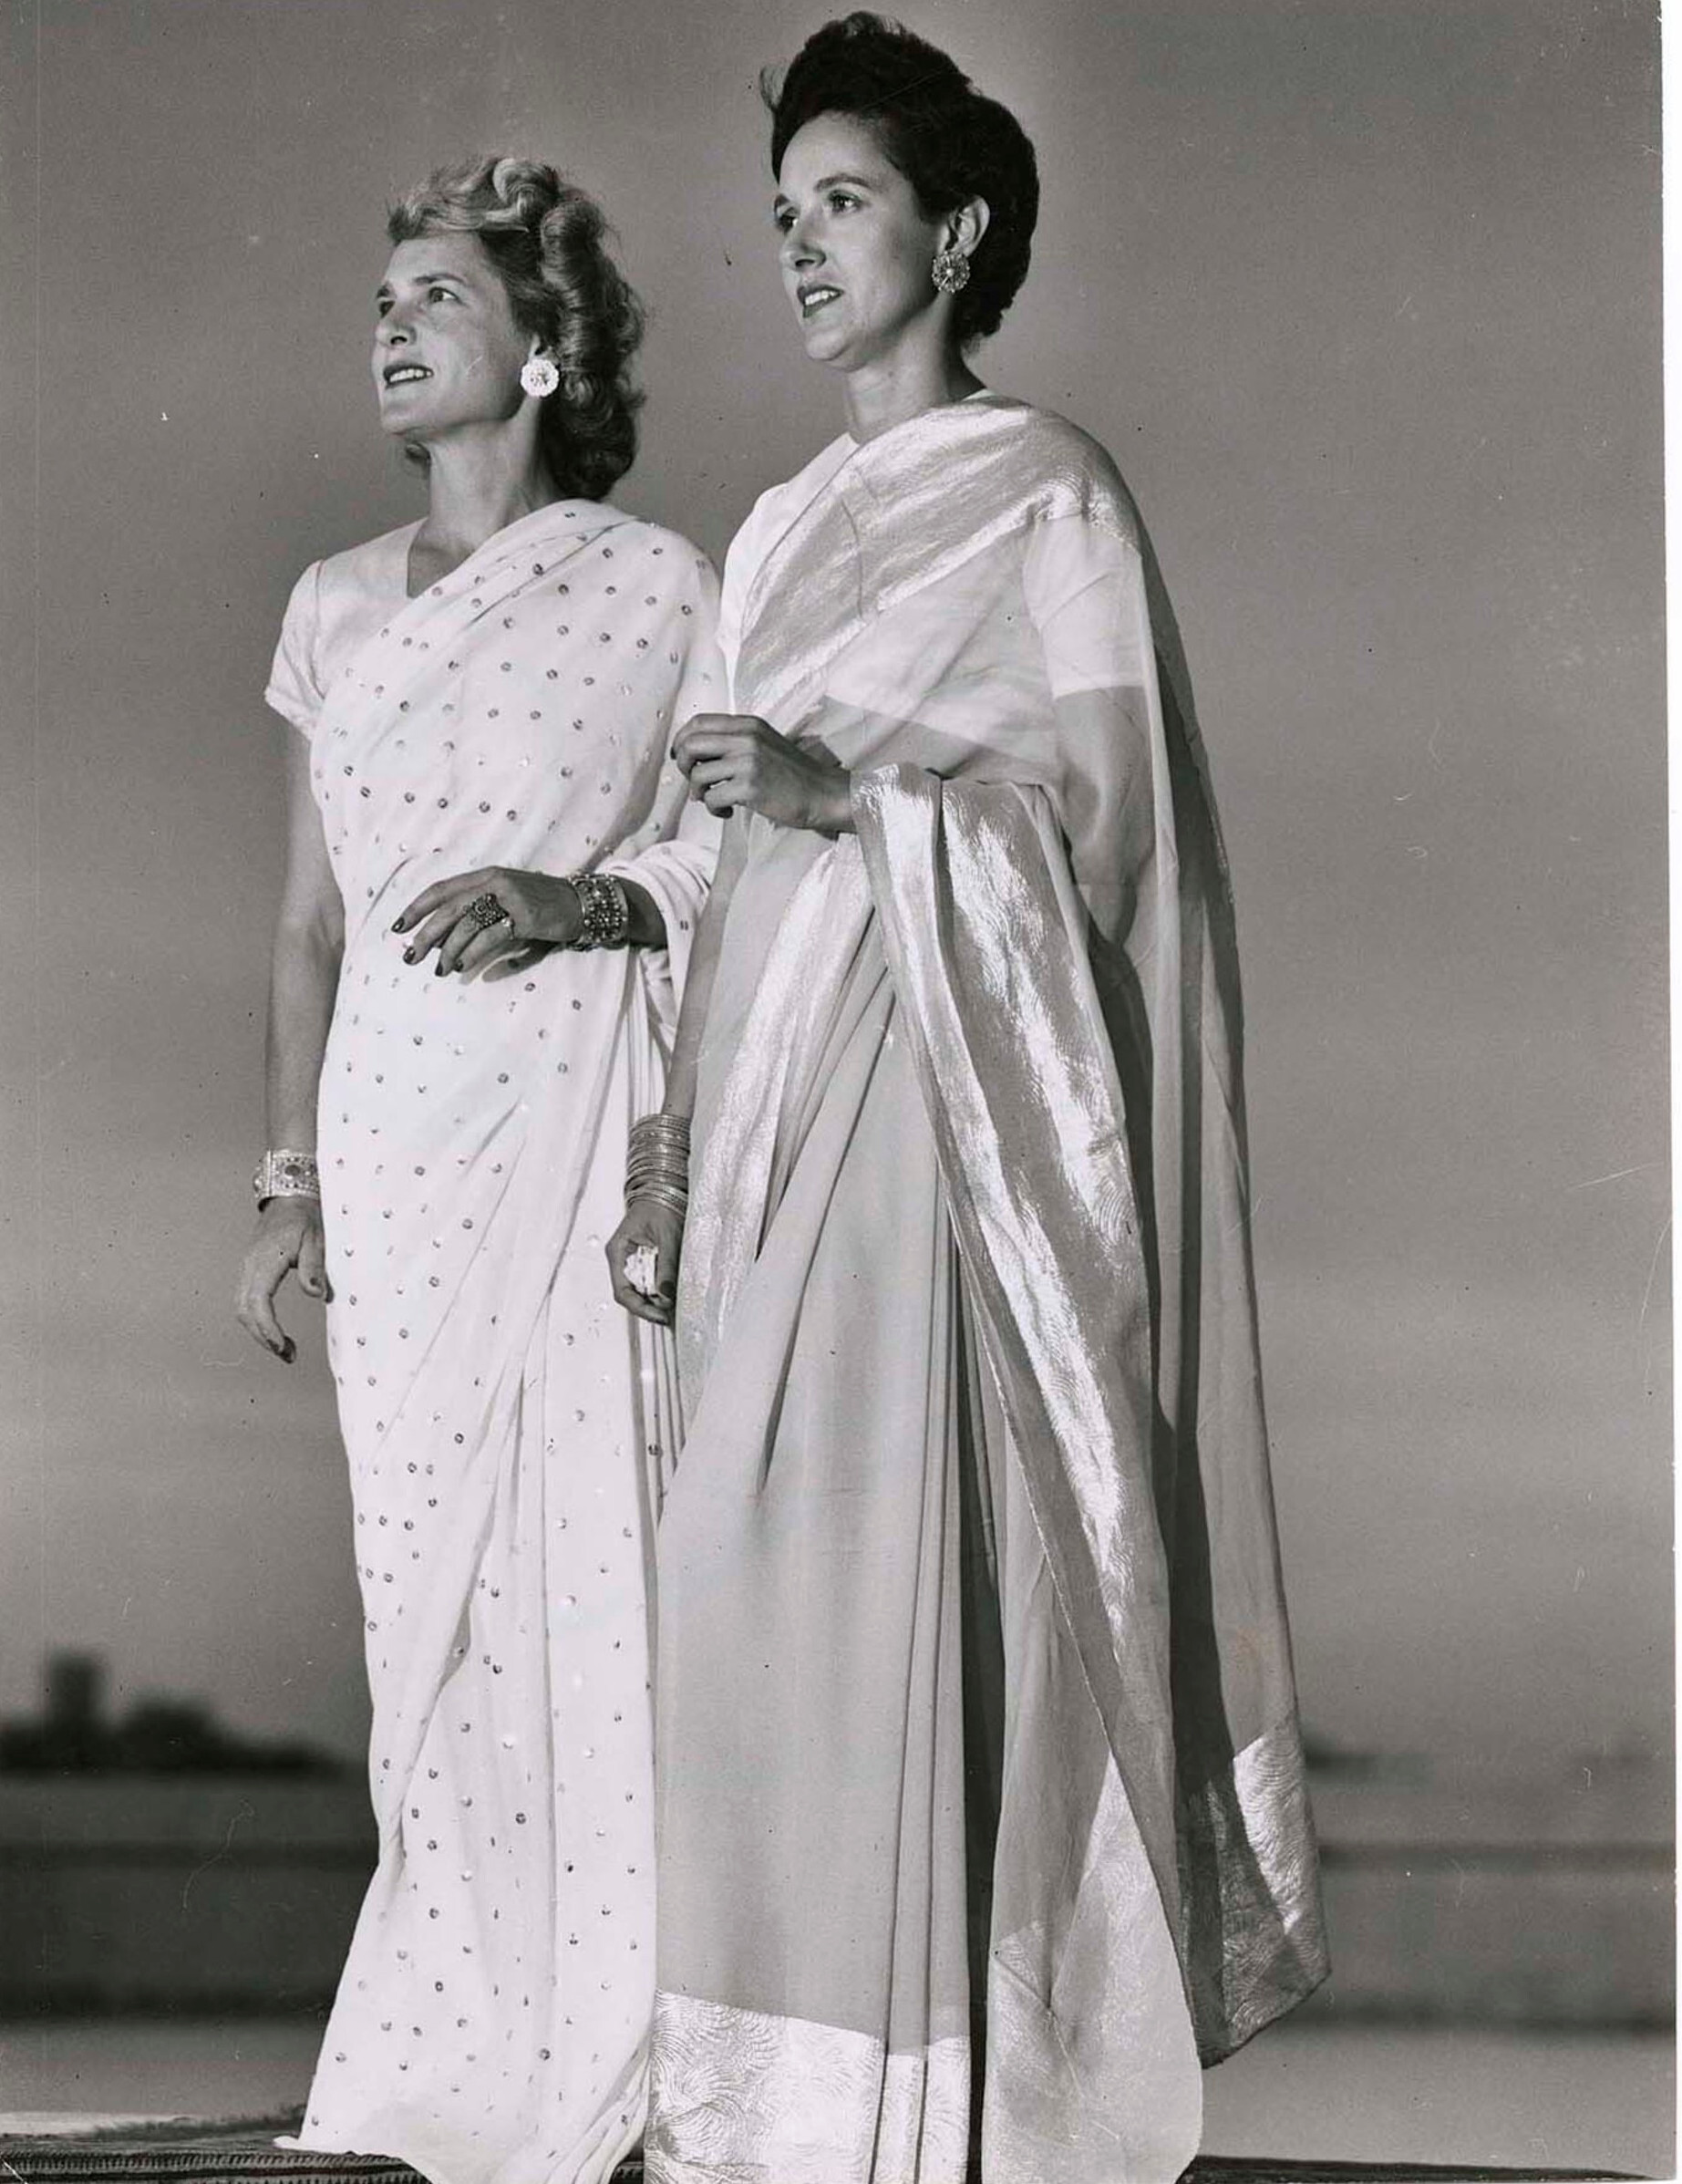 Фотограф LIFE Маргарет Бурк-Уайт (слева) с репортером LIFE edit Ли Эйтингоном, позируют в индуистских сари, 1947 год. Фотограф Маргарет Бурк-Уайт